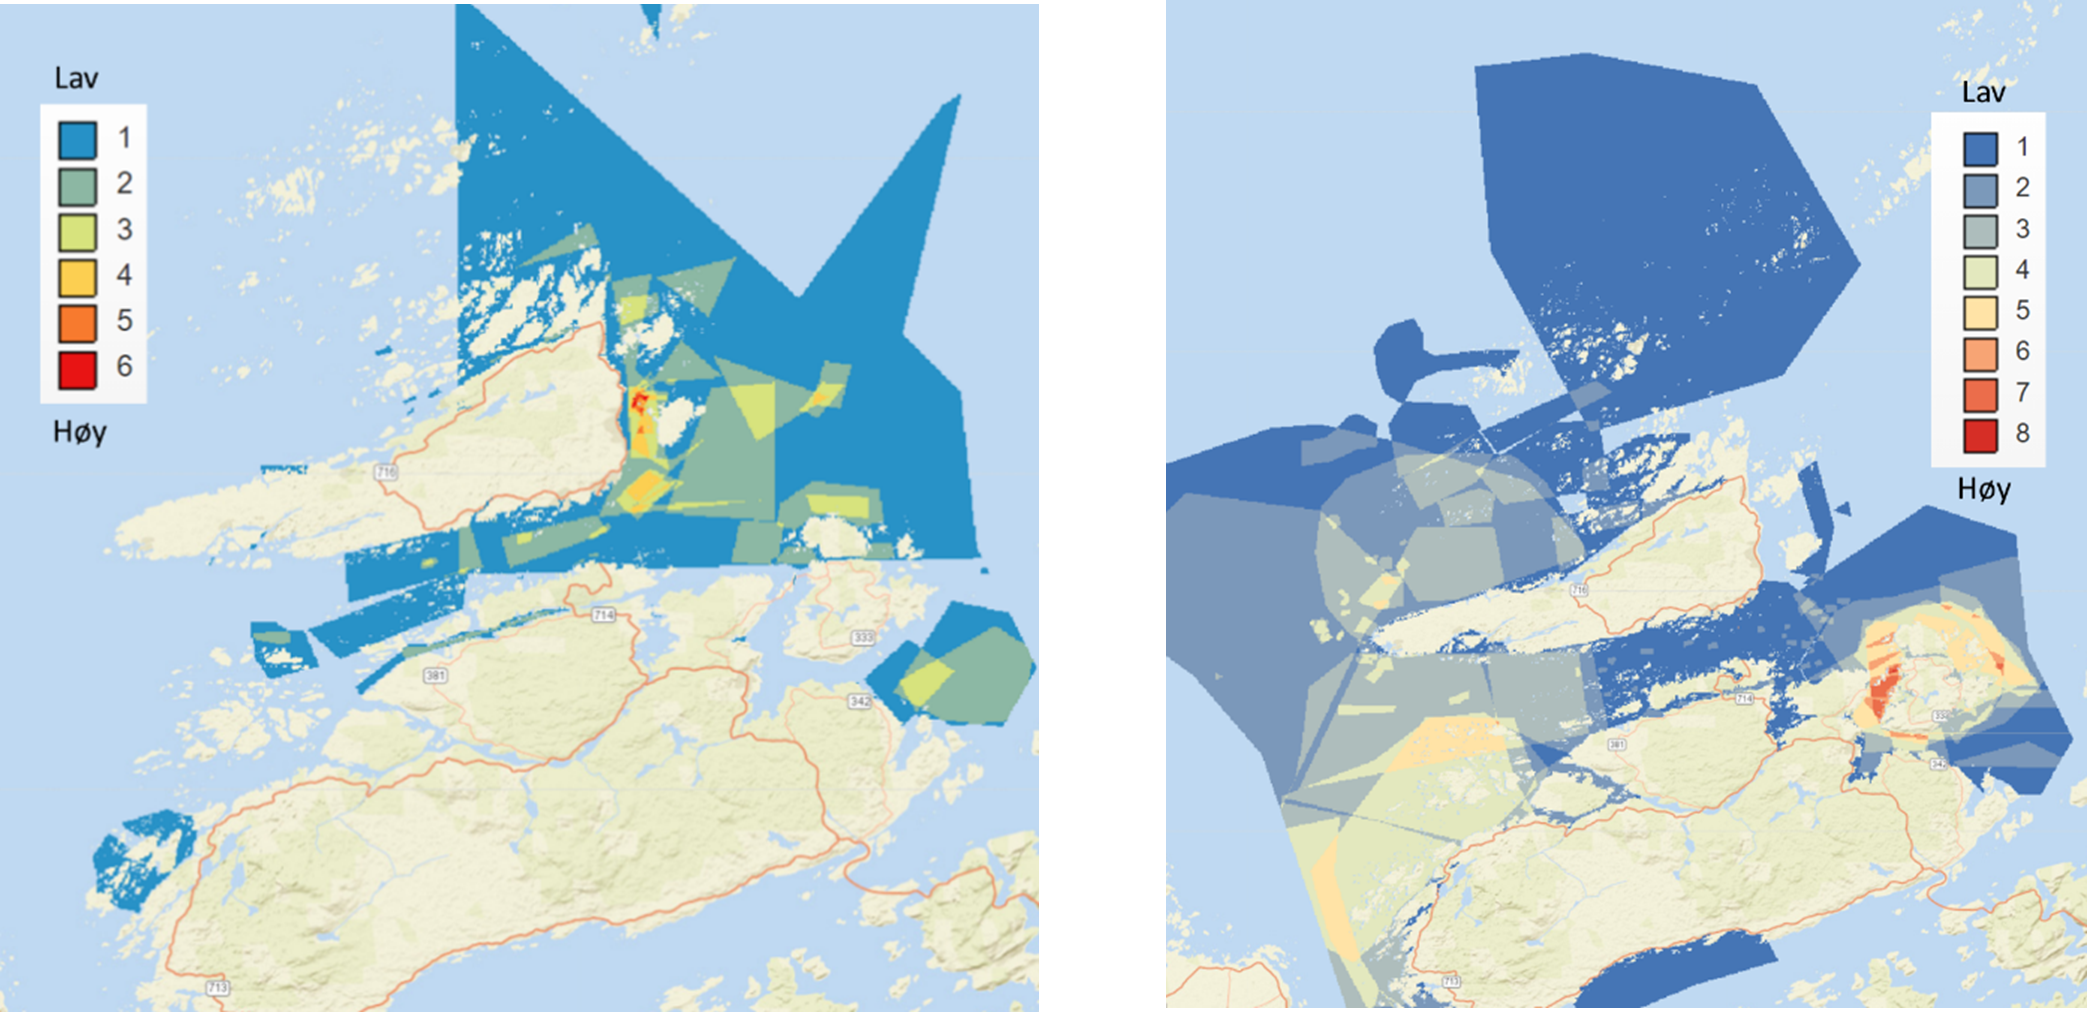 Figur 81 : Kvalitativ kartlegging av viktige plasser for fritidsfiske (til venstre) og turistfiske (til høyre) rundt Frøya og Hitra basert på intervjuer av 34 fritidsfiskere respektive 11 turistfiskebedrifter i 2018-2019. Verdisettingen ble gjort på en skala fra 1 (lav verdi) til 15 (høy verdi). Se Kleiven et al. (2021) for flere detaljer om undersøkelsen.